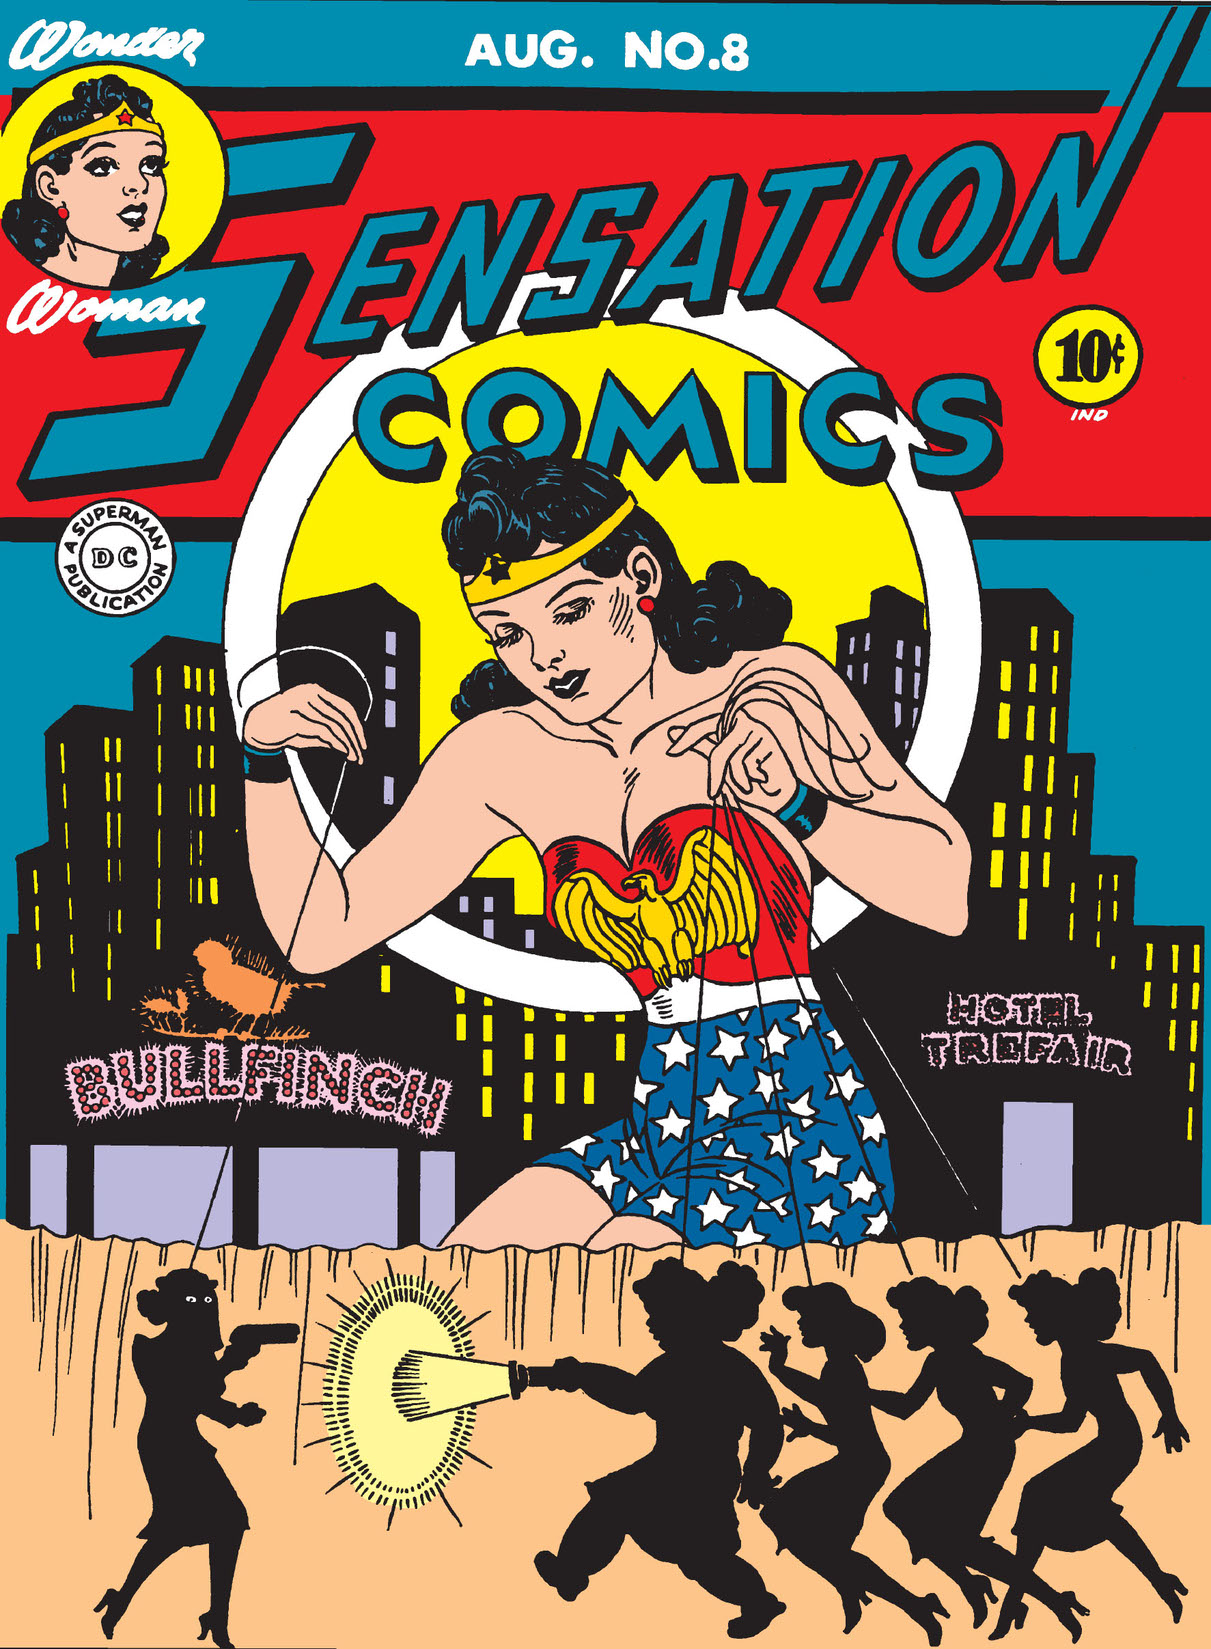 Sensation Comics #8-9 preview images